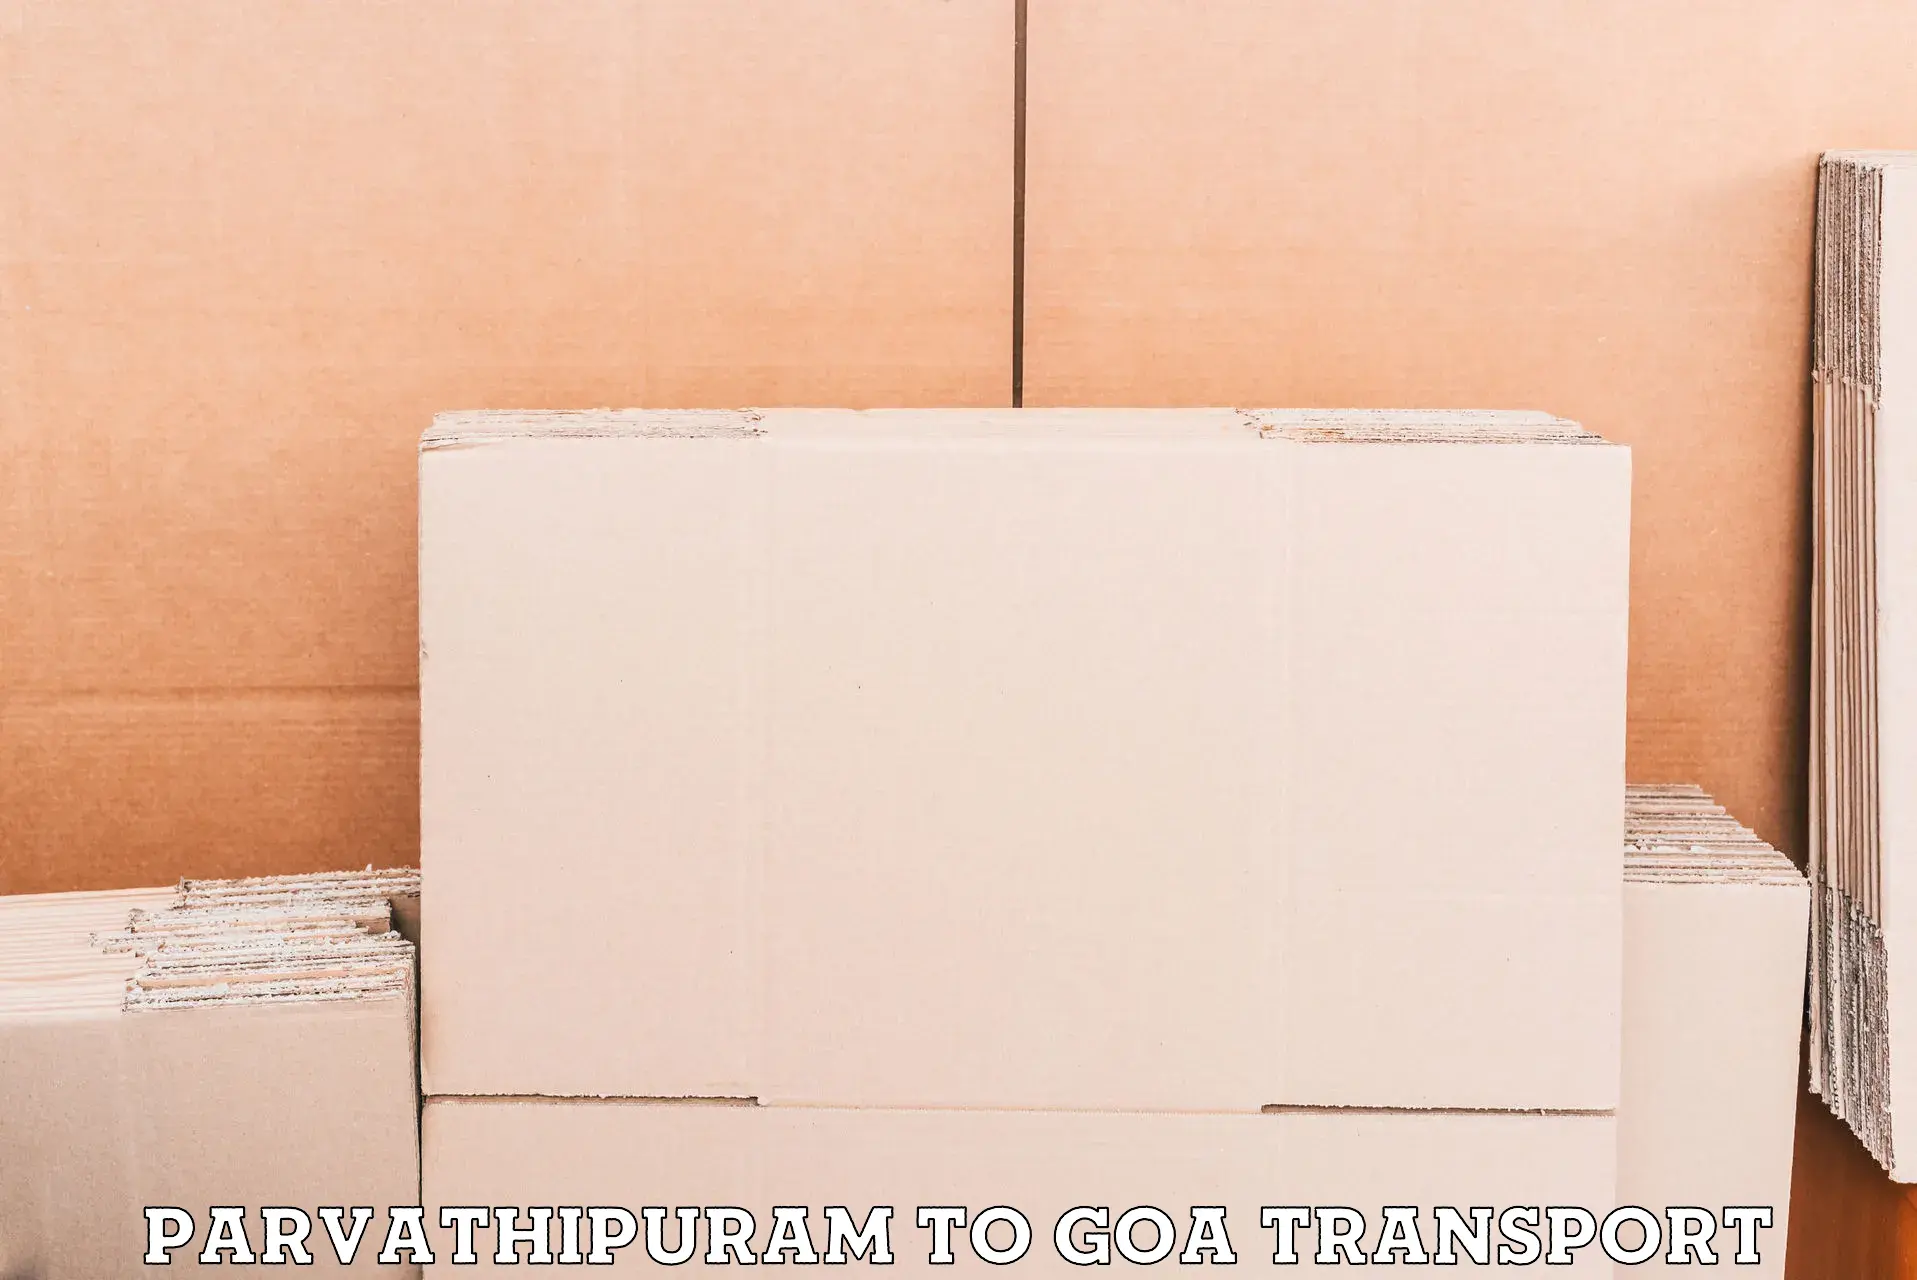 Online transport service Parvathipuram to Mormugao Port